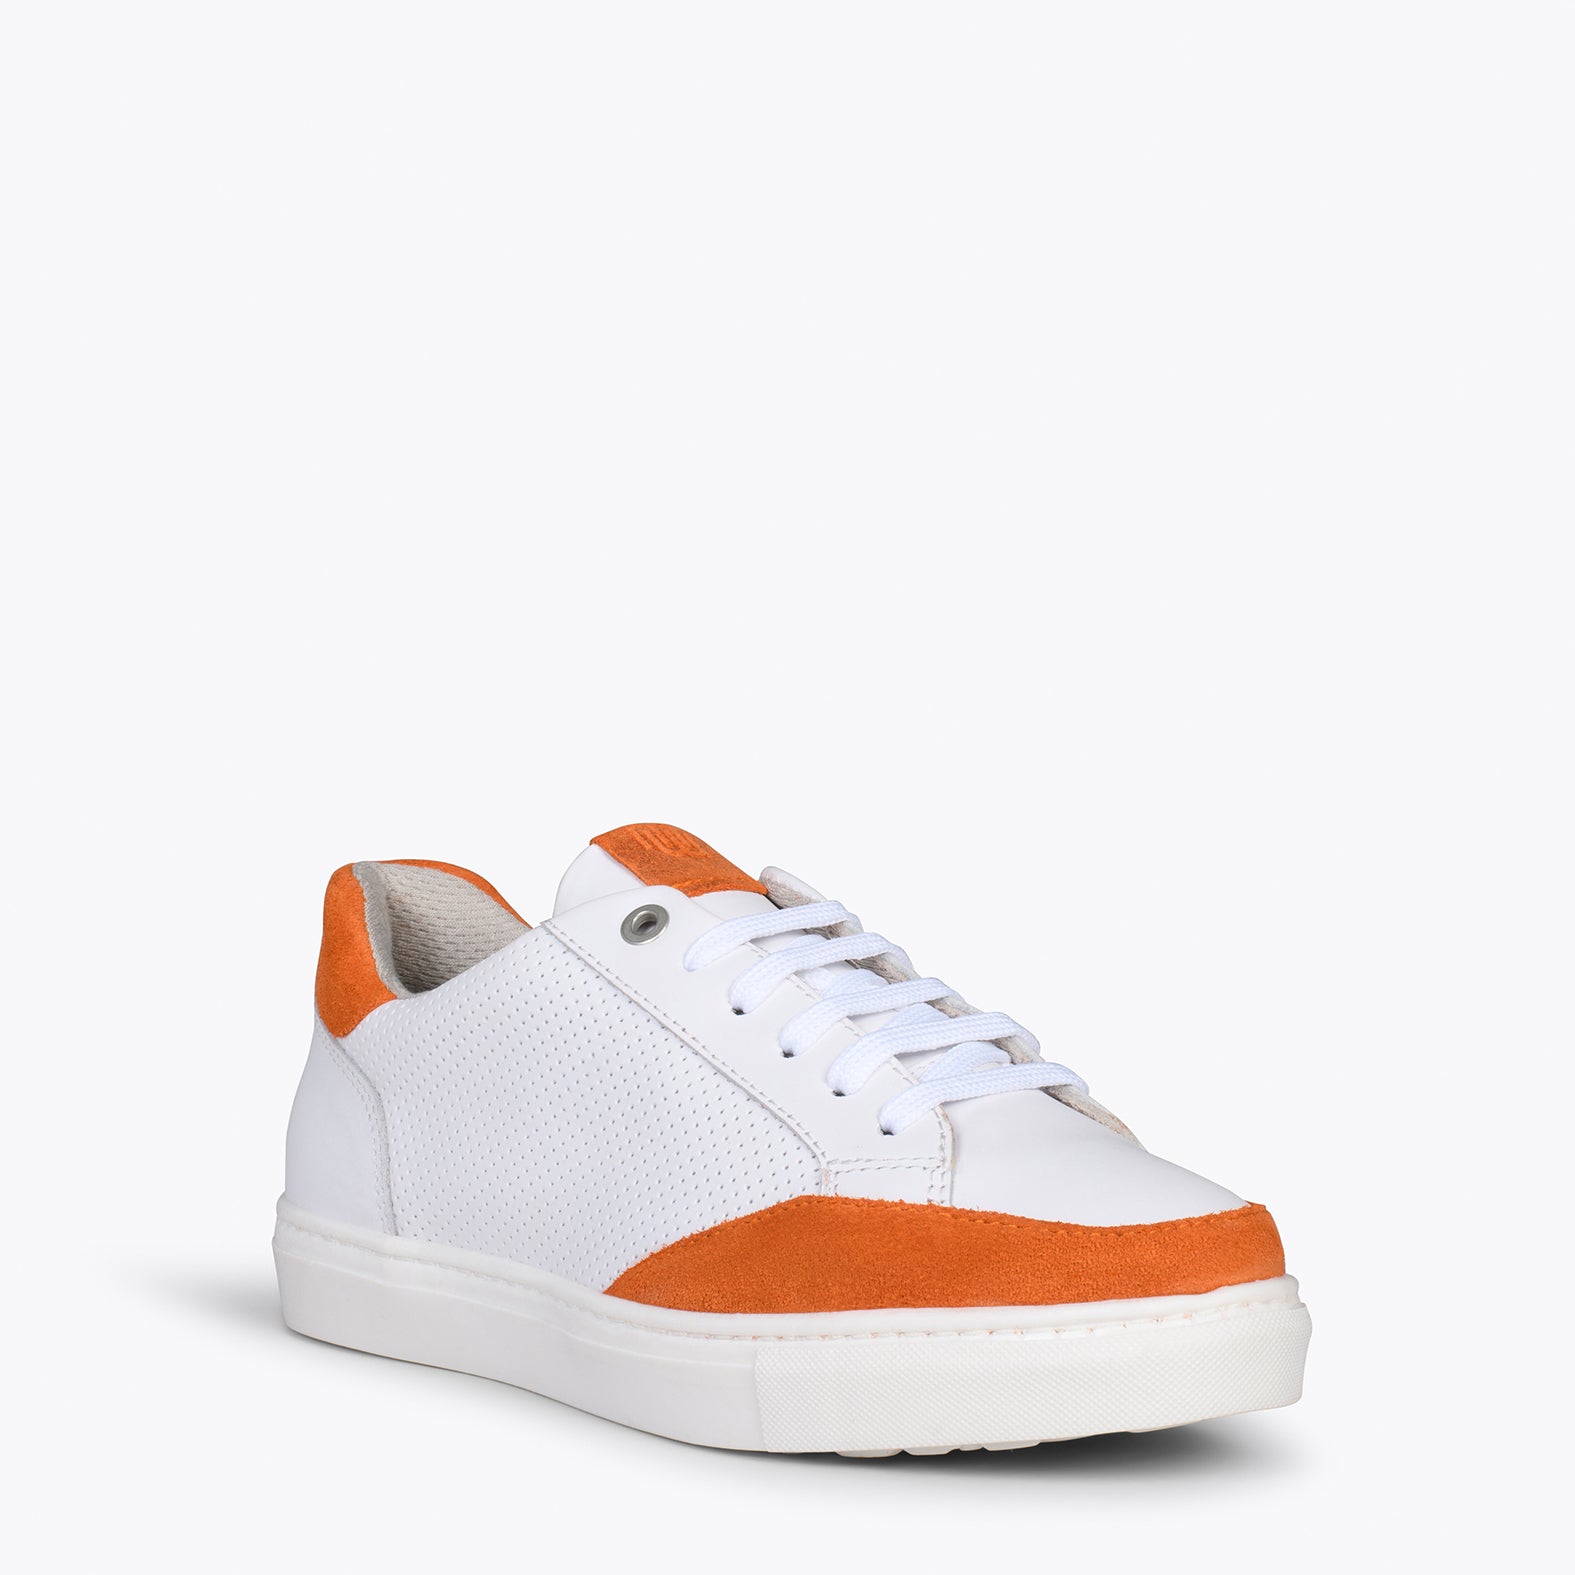 SNEAKER DOTS – ORANGE casual sneaker